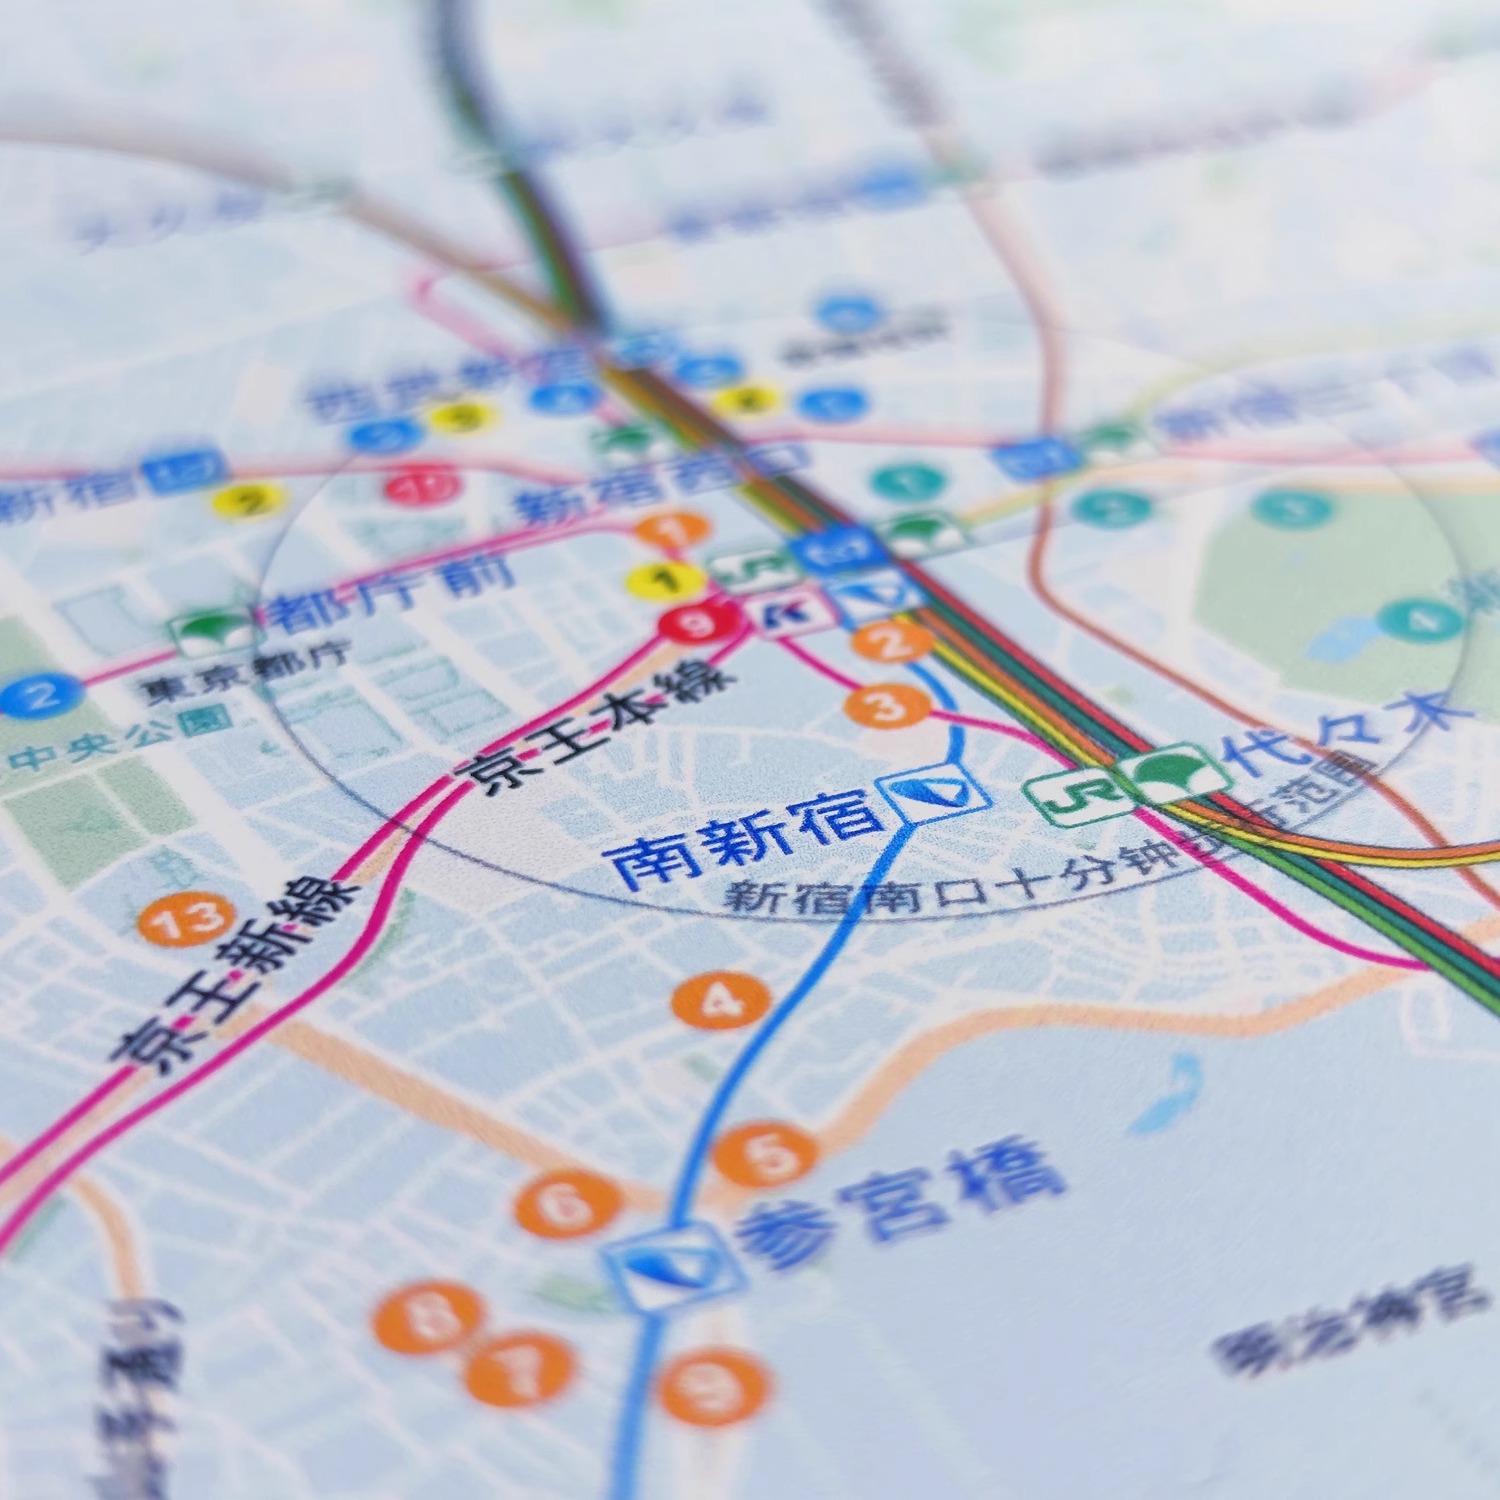 圣地巡礼指南图+明信片套装日本旅游打卡取景地周边精美收藏地图 - 图0